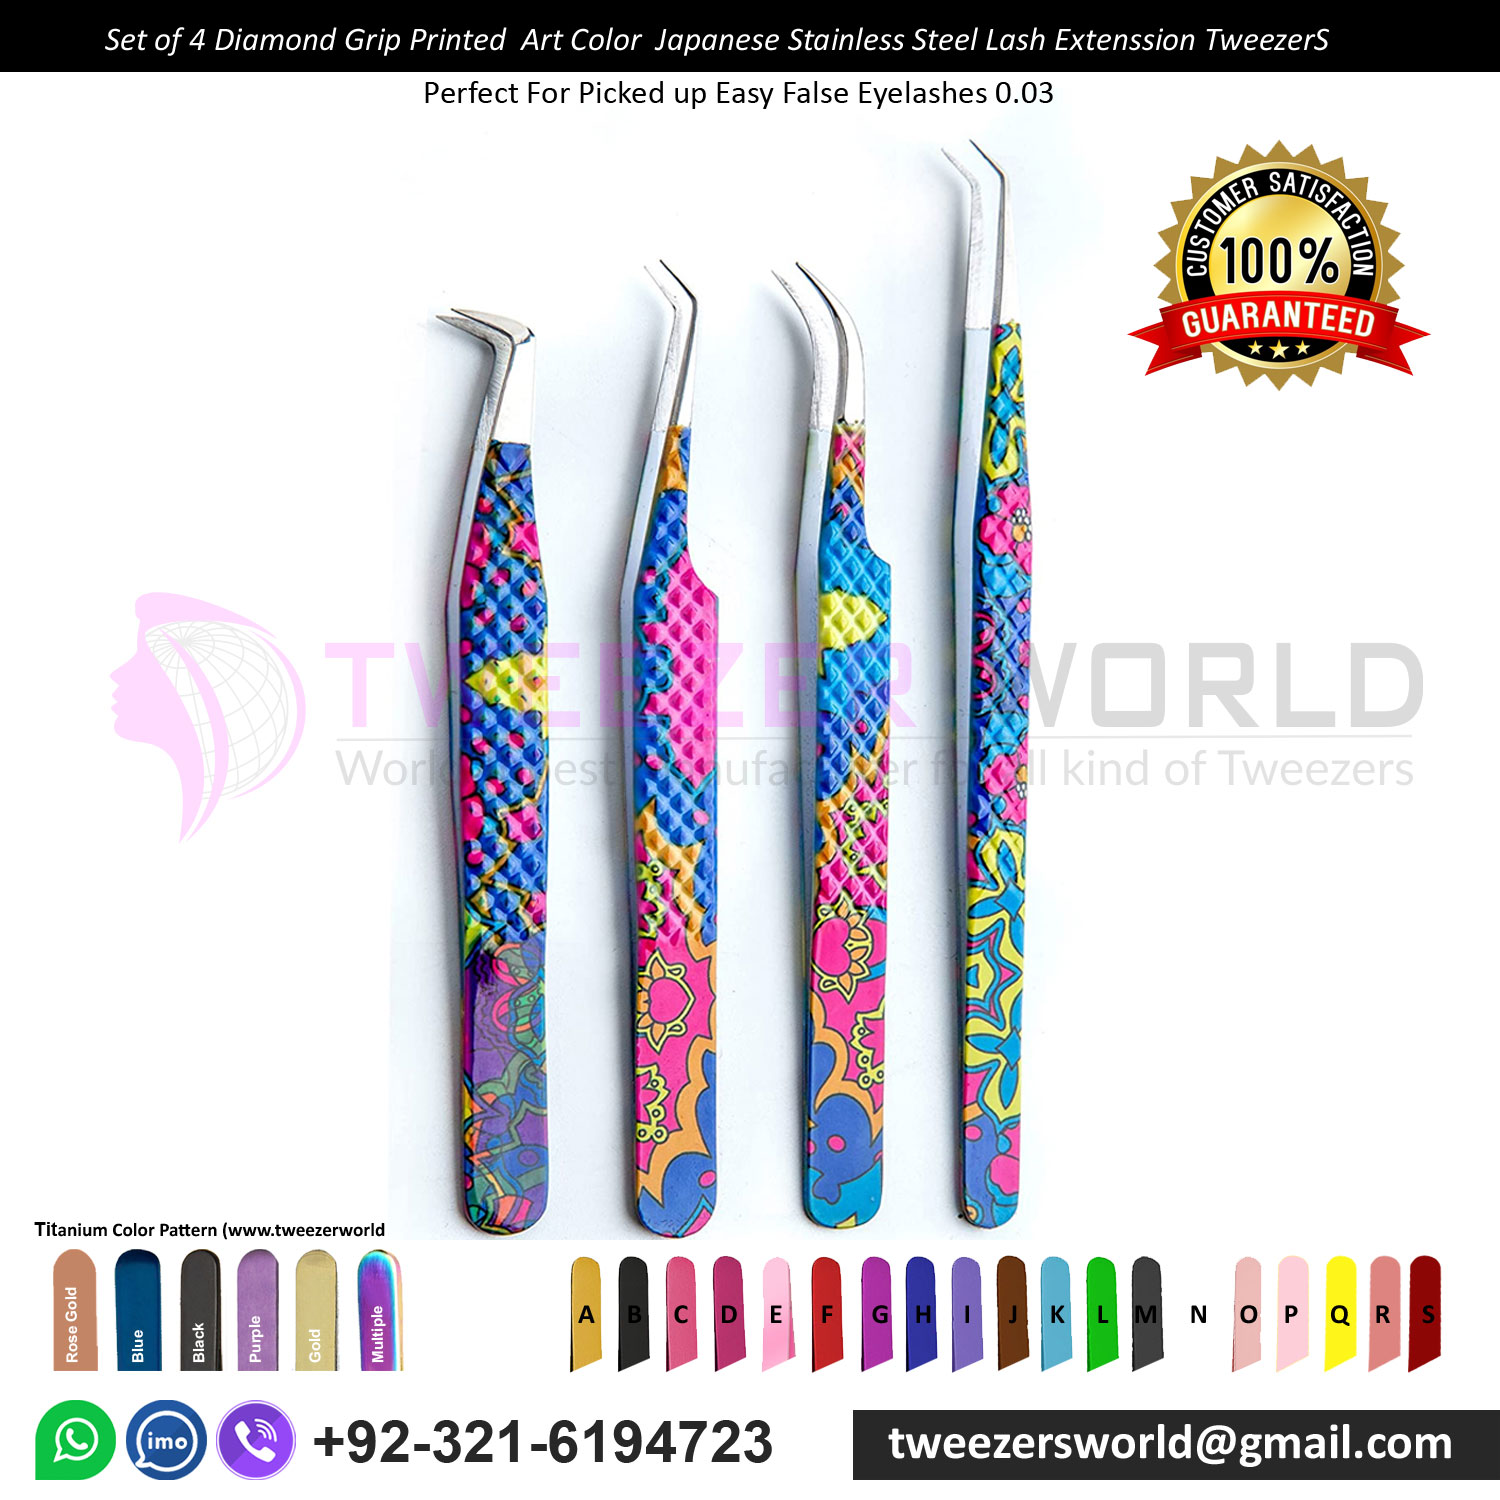 Set of 4 Diamond Grip Printed Art Color Japanese Stainless Steel Tweezers